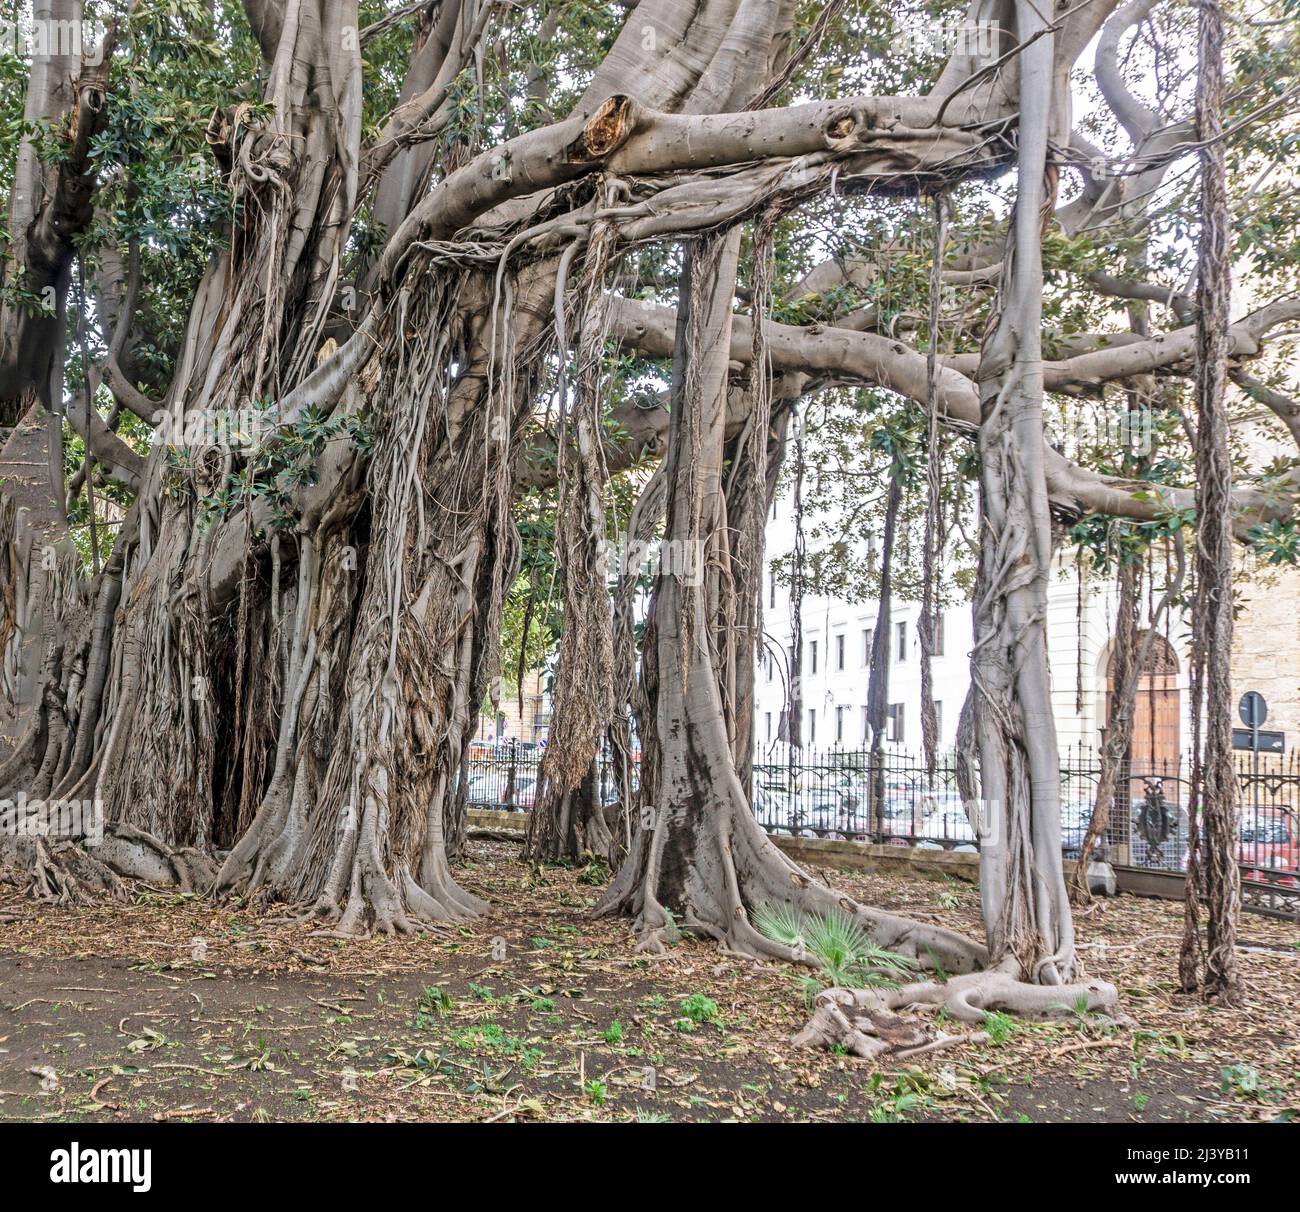 Un grupo de árboles Banyan de forma extraña en Piazza Marina, Palermo, Sicilia, los árboles Banyan desarrollan raíces aéreas que maduran en gruesos troncos arbolados. Foto de stock